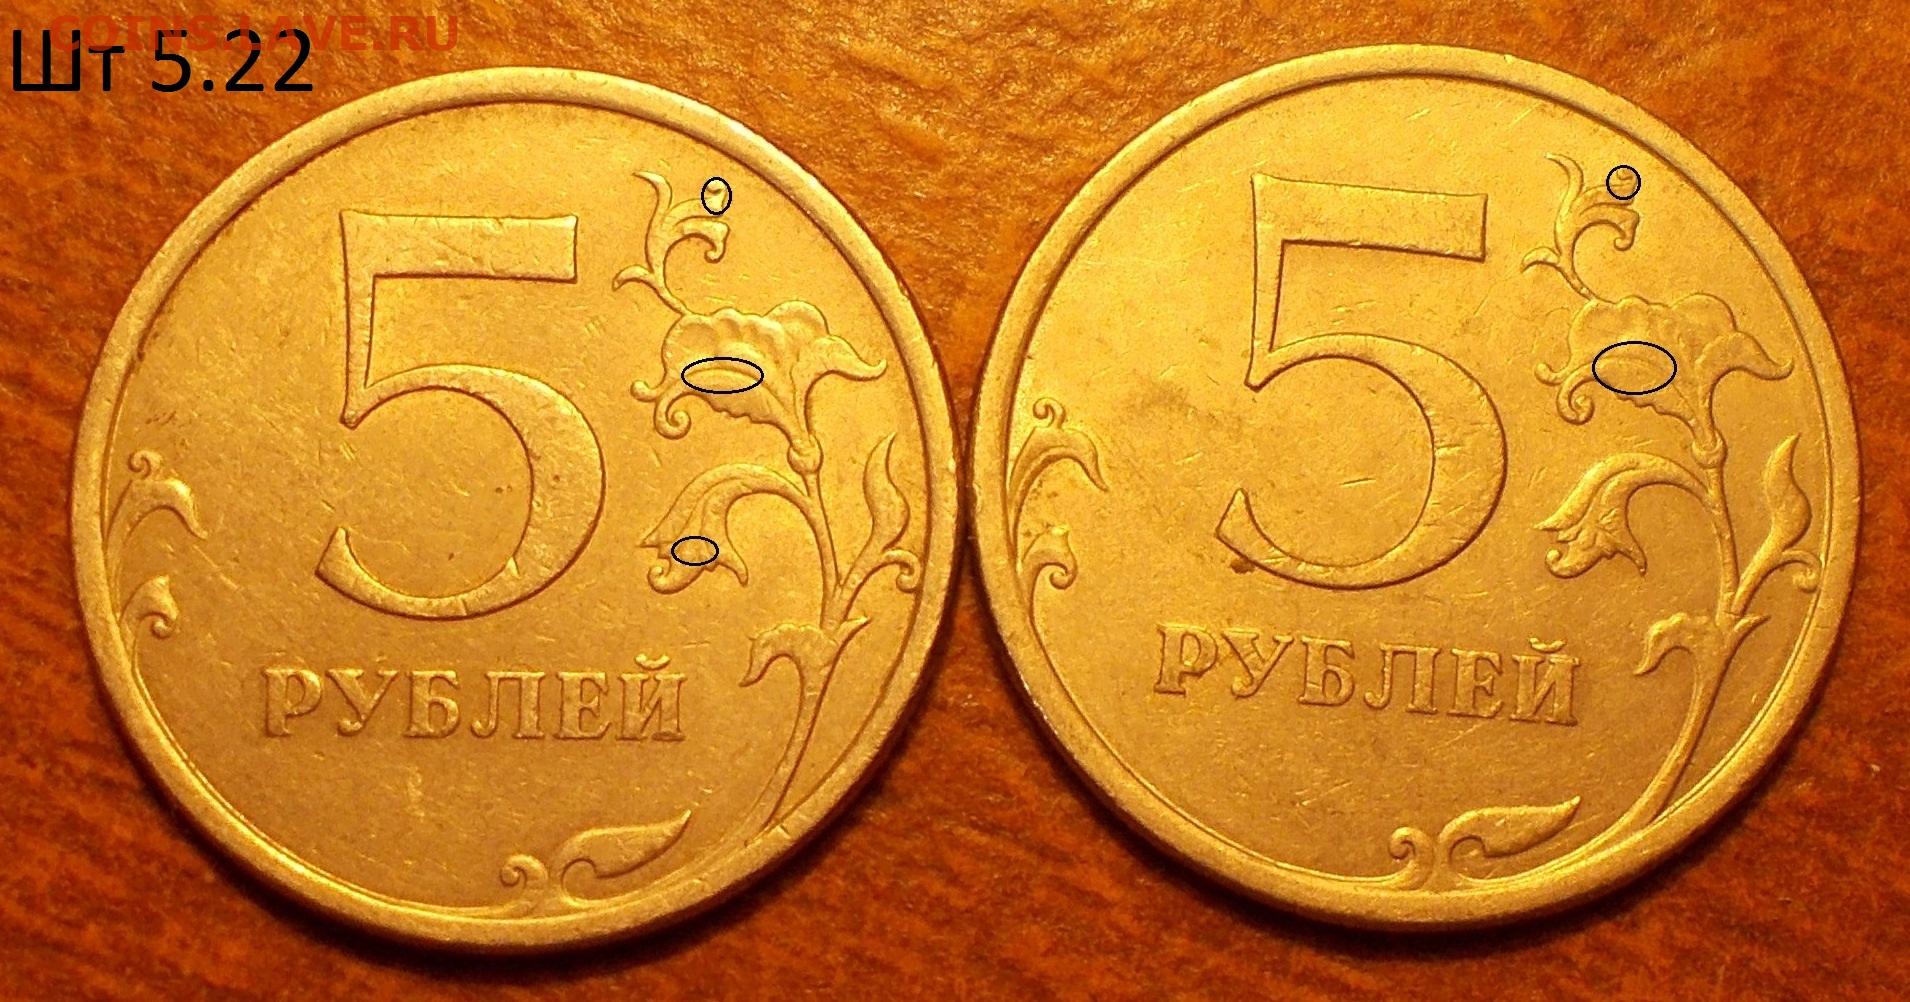 5 рублей имеющие ценность. 5 Рублей 2009 года СПМД. 5 Рублей 2009 желтая. Российское 10 рублей 2009 года. 5 Рублей Ростов 2004.